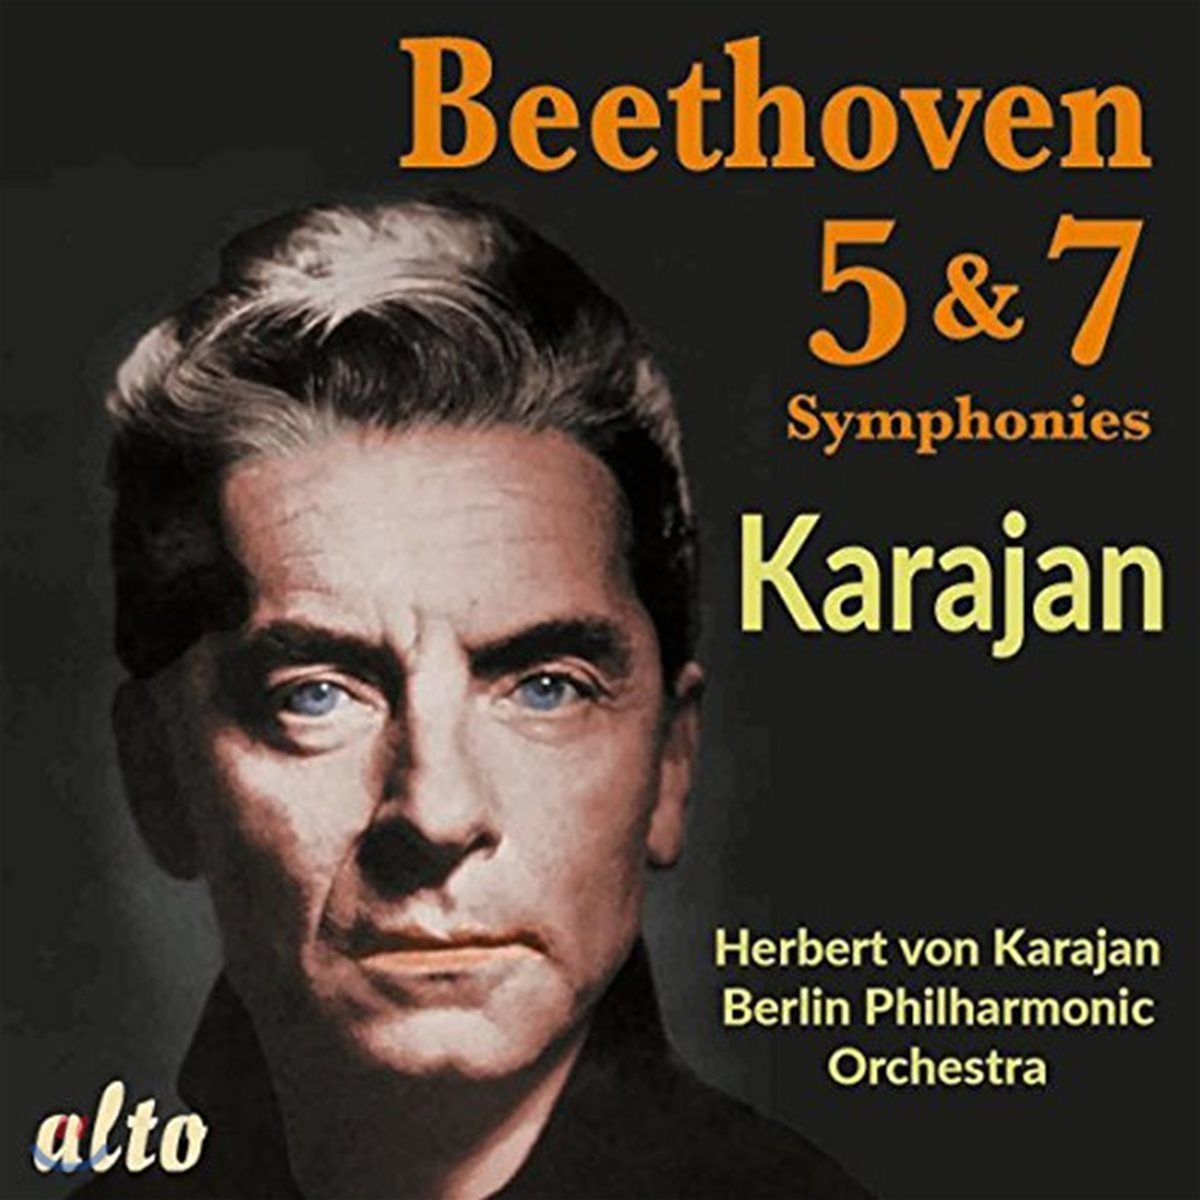 Herbert von Karajan 베토벤: 교향곡 5번, 7번 (Beethoven: Symphonies Nos. 5 & 7)